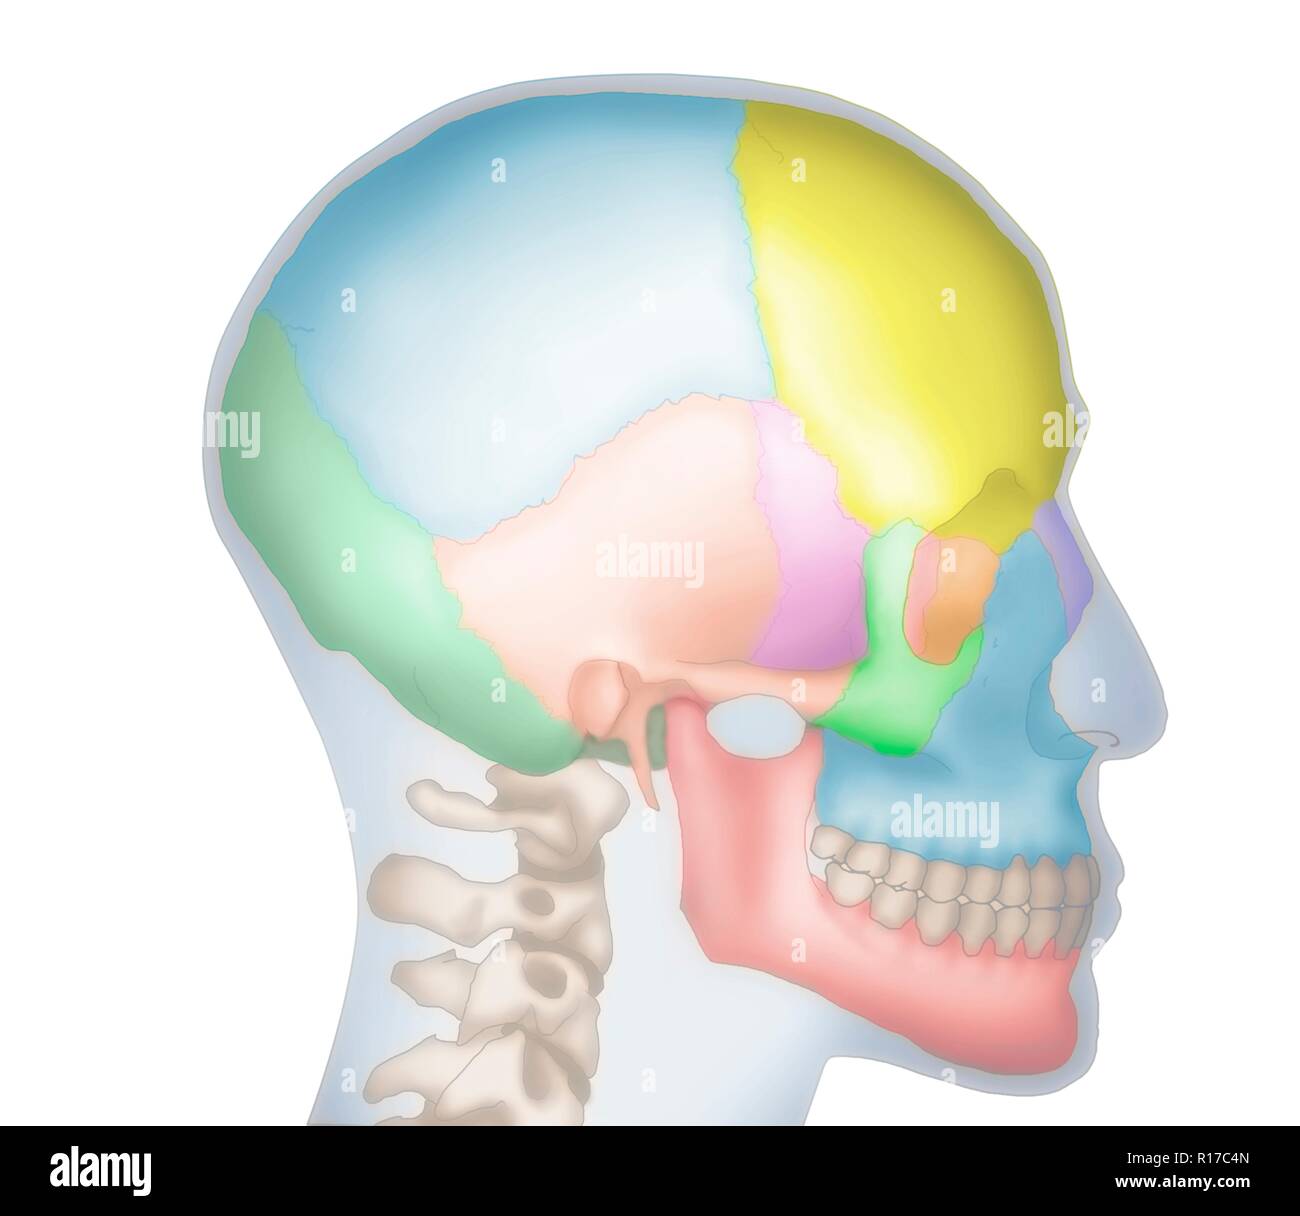 Abbildung eines menschlichen Schädels zeigt die Umrisse des Kopfes in Blau. Die verschiedenen Knochen des Schädels sind auch in unterschiedlichen Farben dargestellt, einschließlich der frontale (Gelb), Parietalen (blau), Okzipitalen (dunkelgrün), Temporal (orange) und Nase (lila). Stockfoto